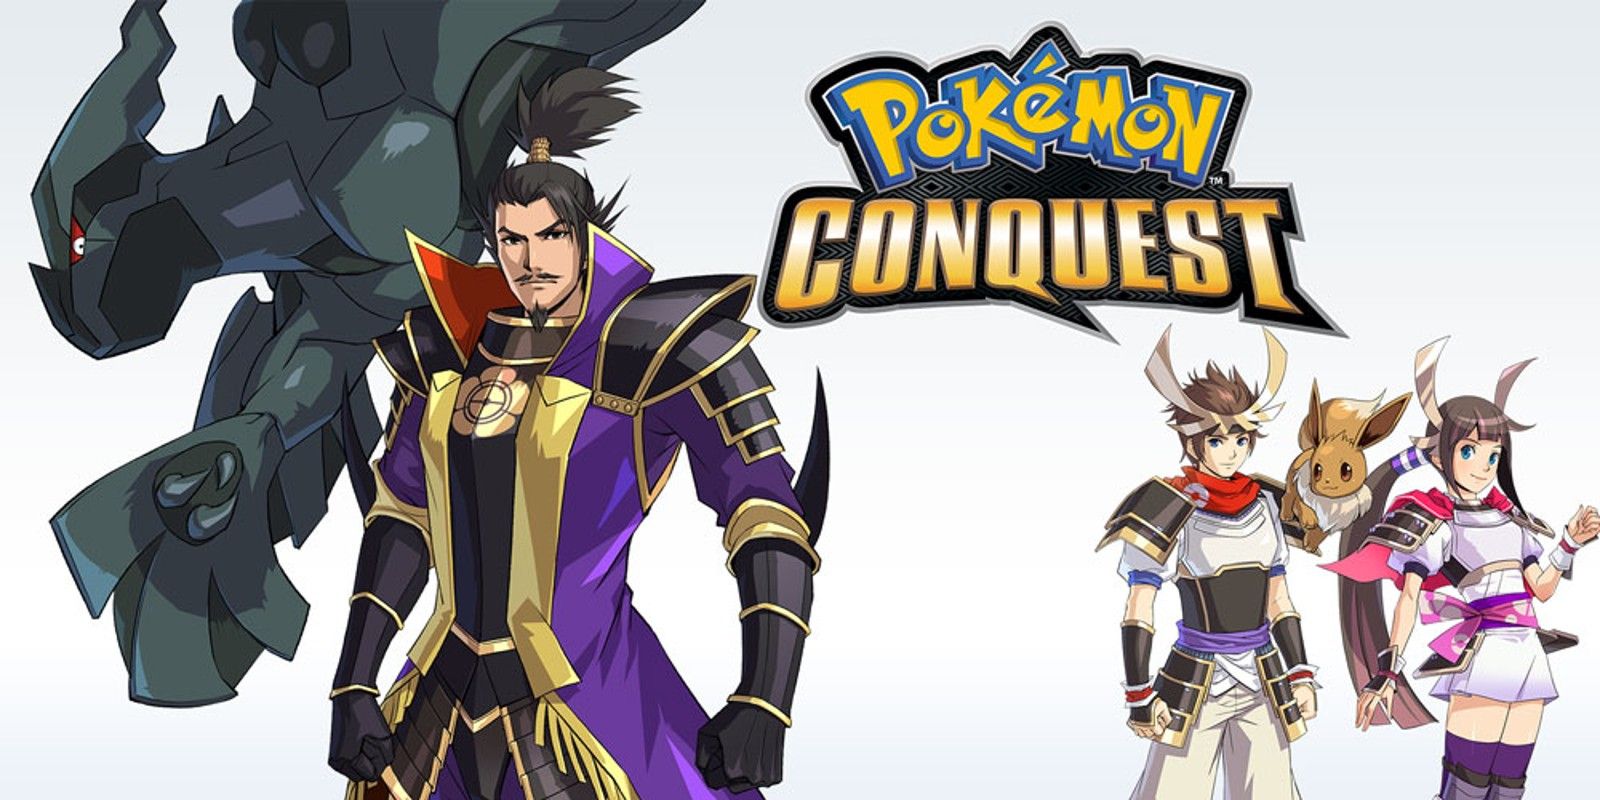 Poster art for Pokémon Conquest